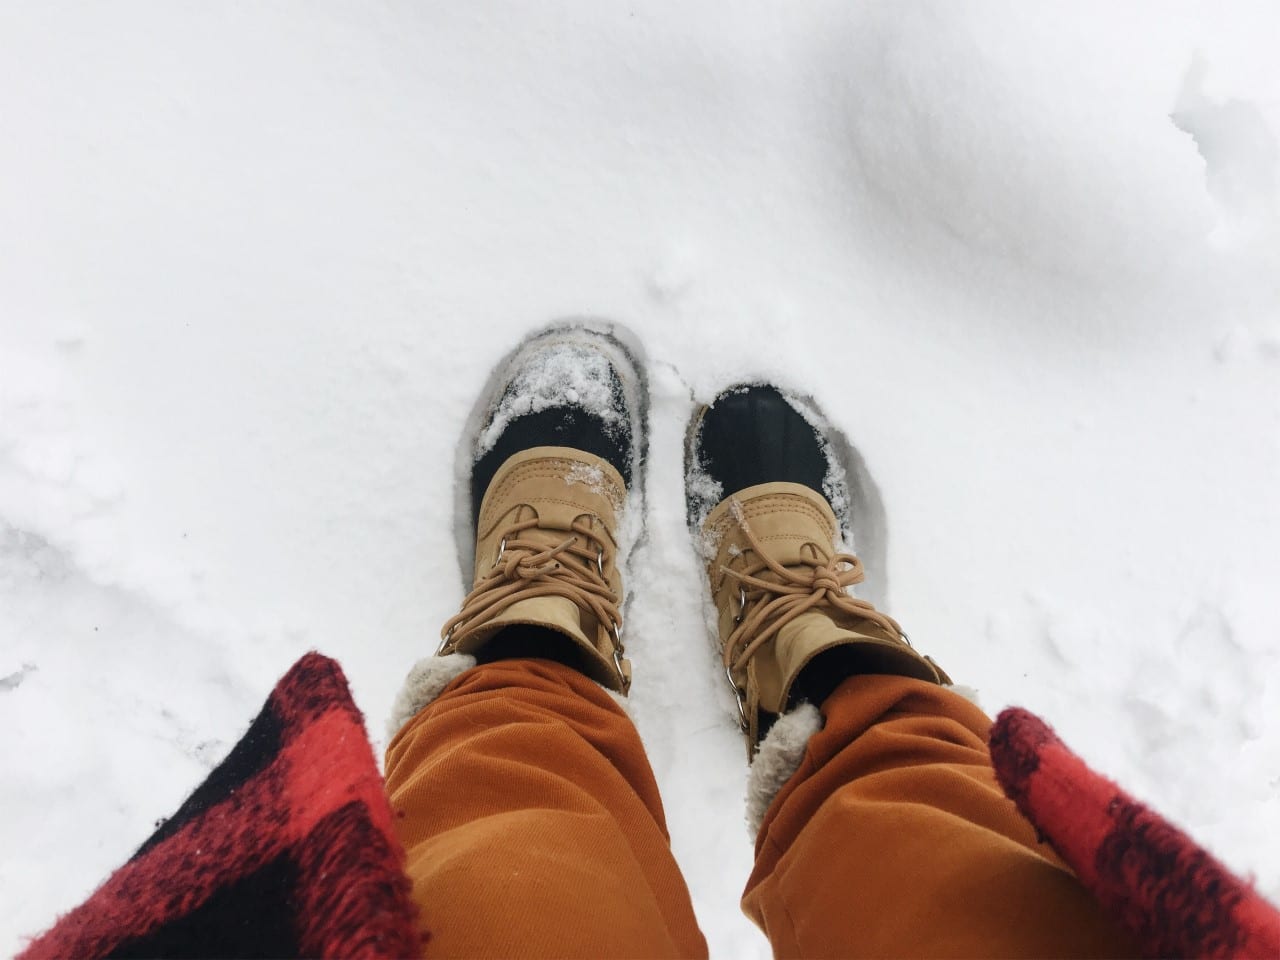 Snowy feet. Photo by Jeanne Clark